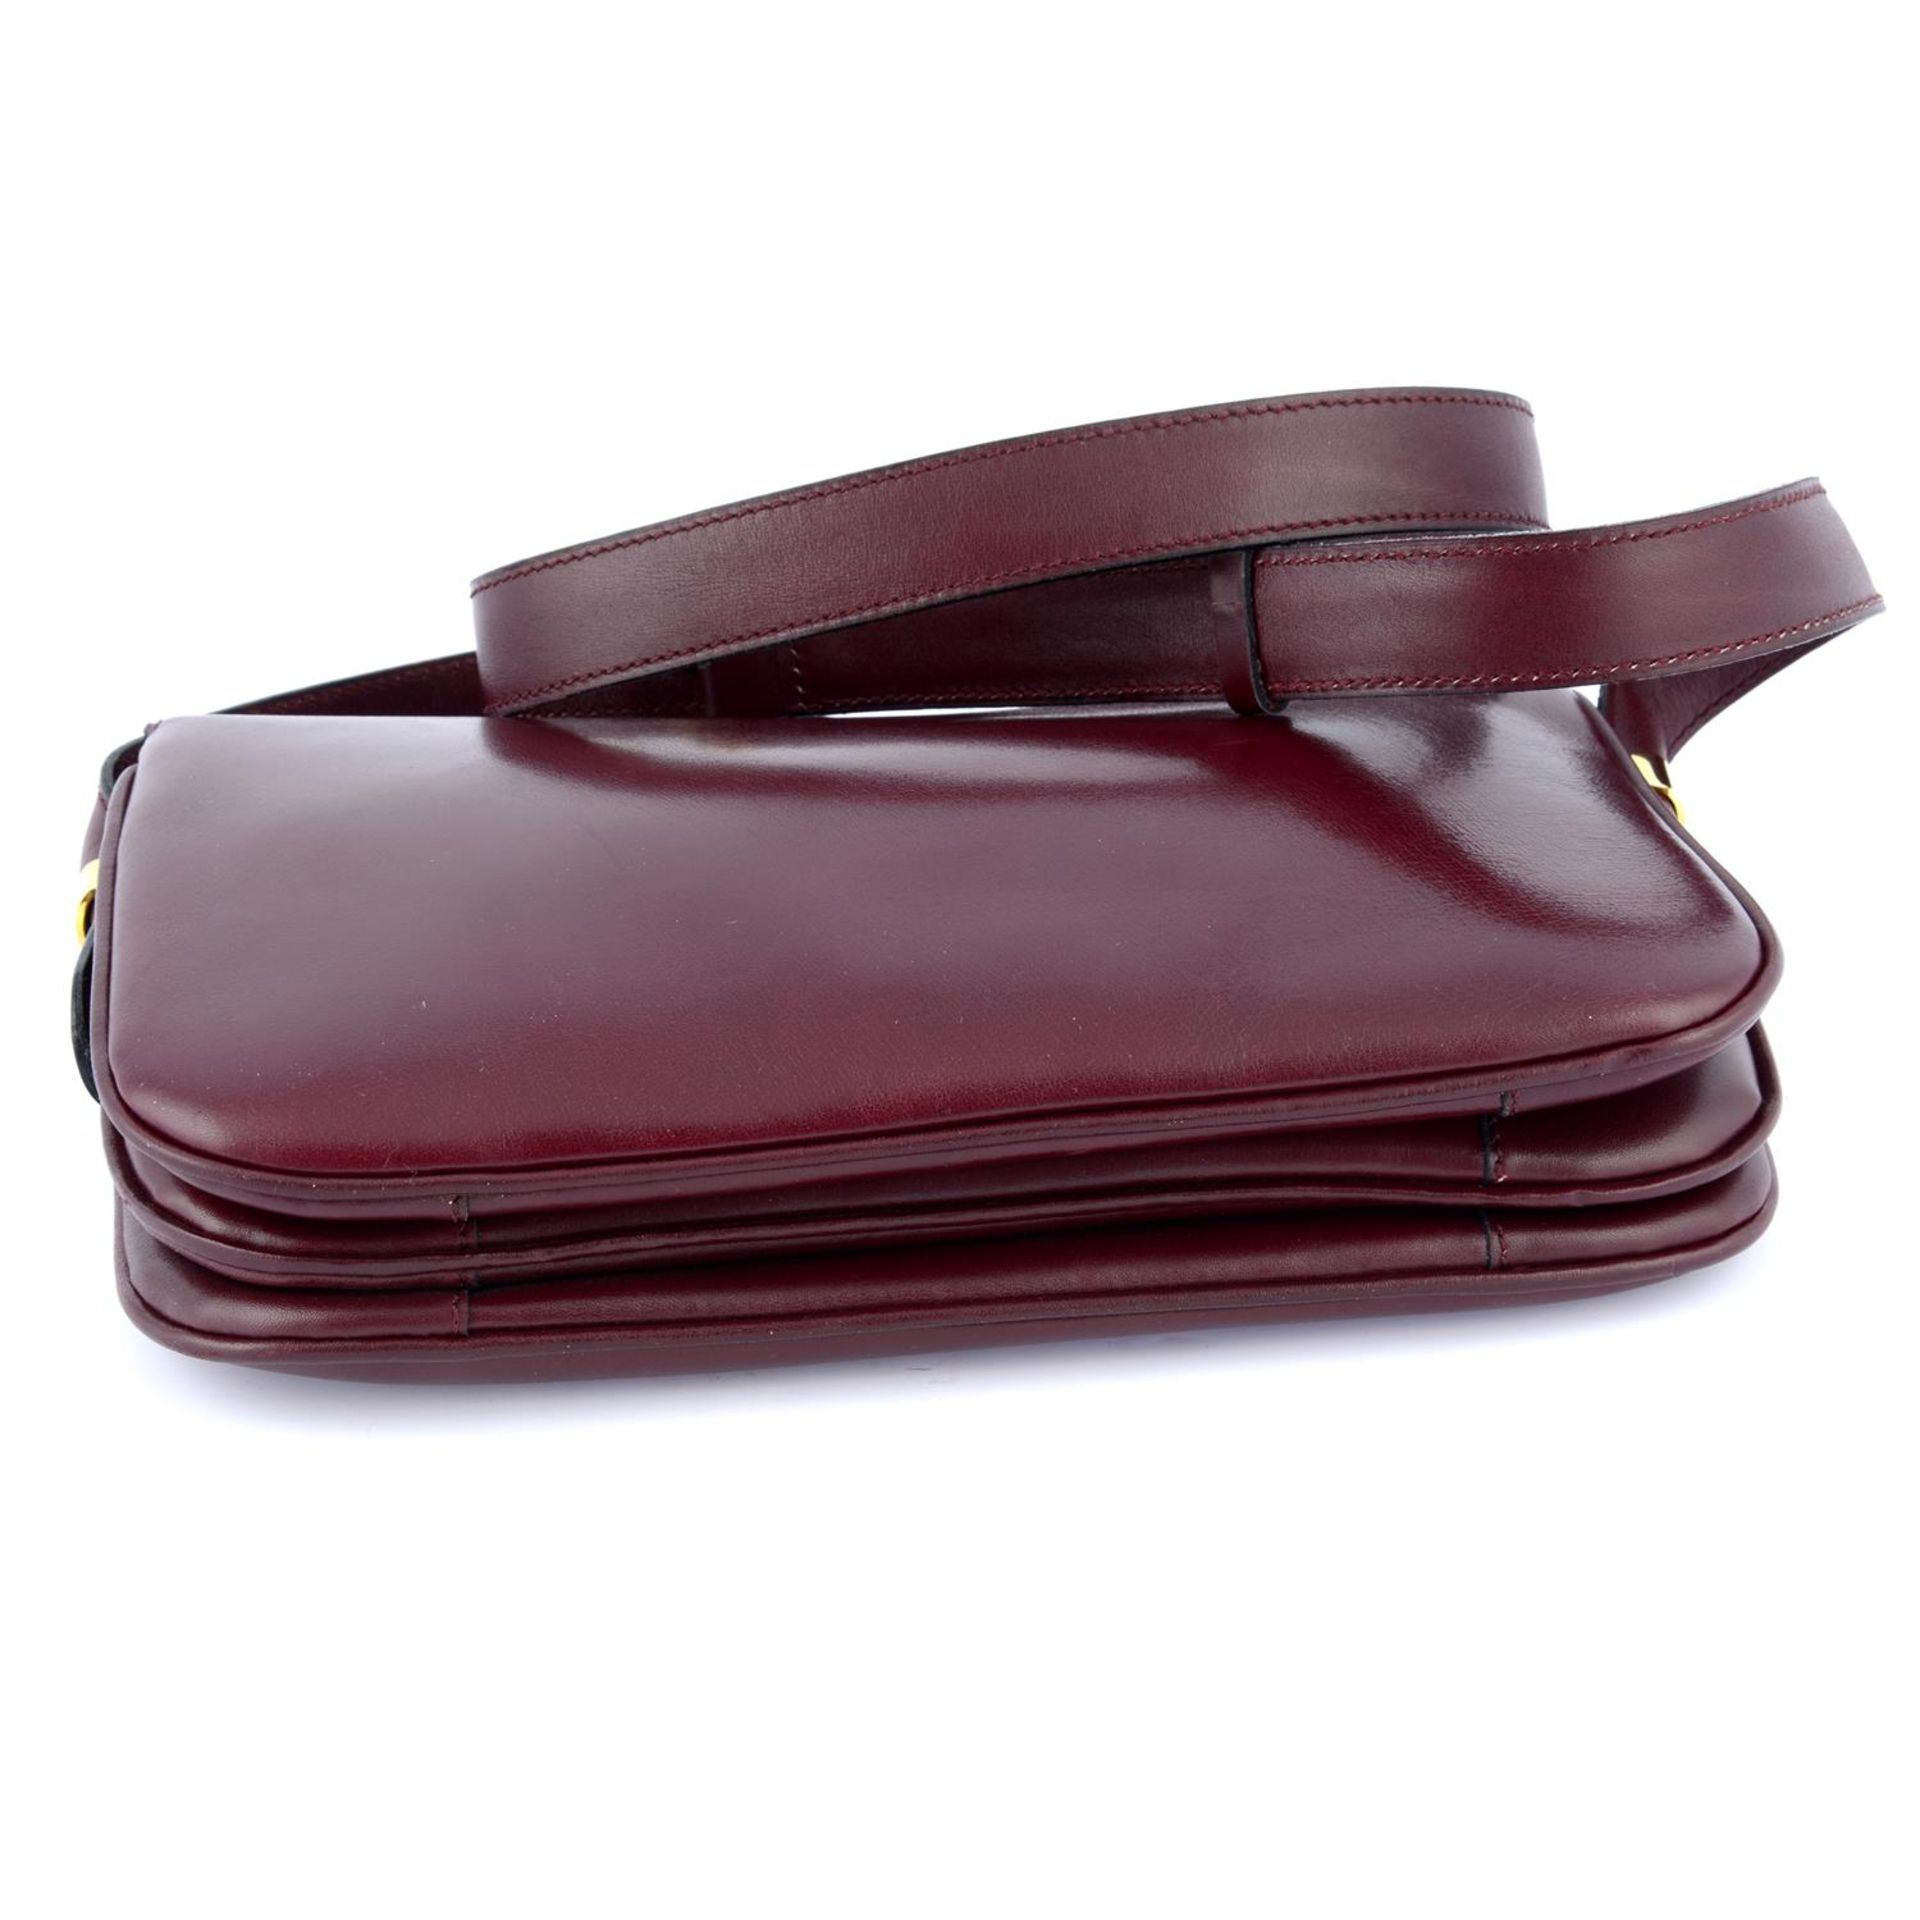 CÉLINE - a red leather shoulder bag. - Bild 3 aus 3